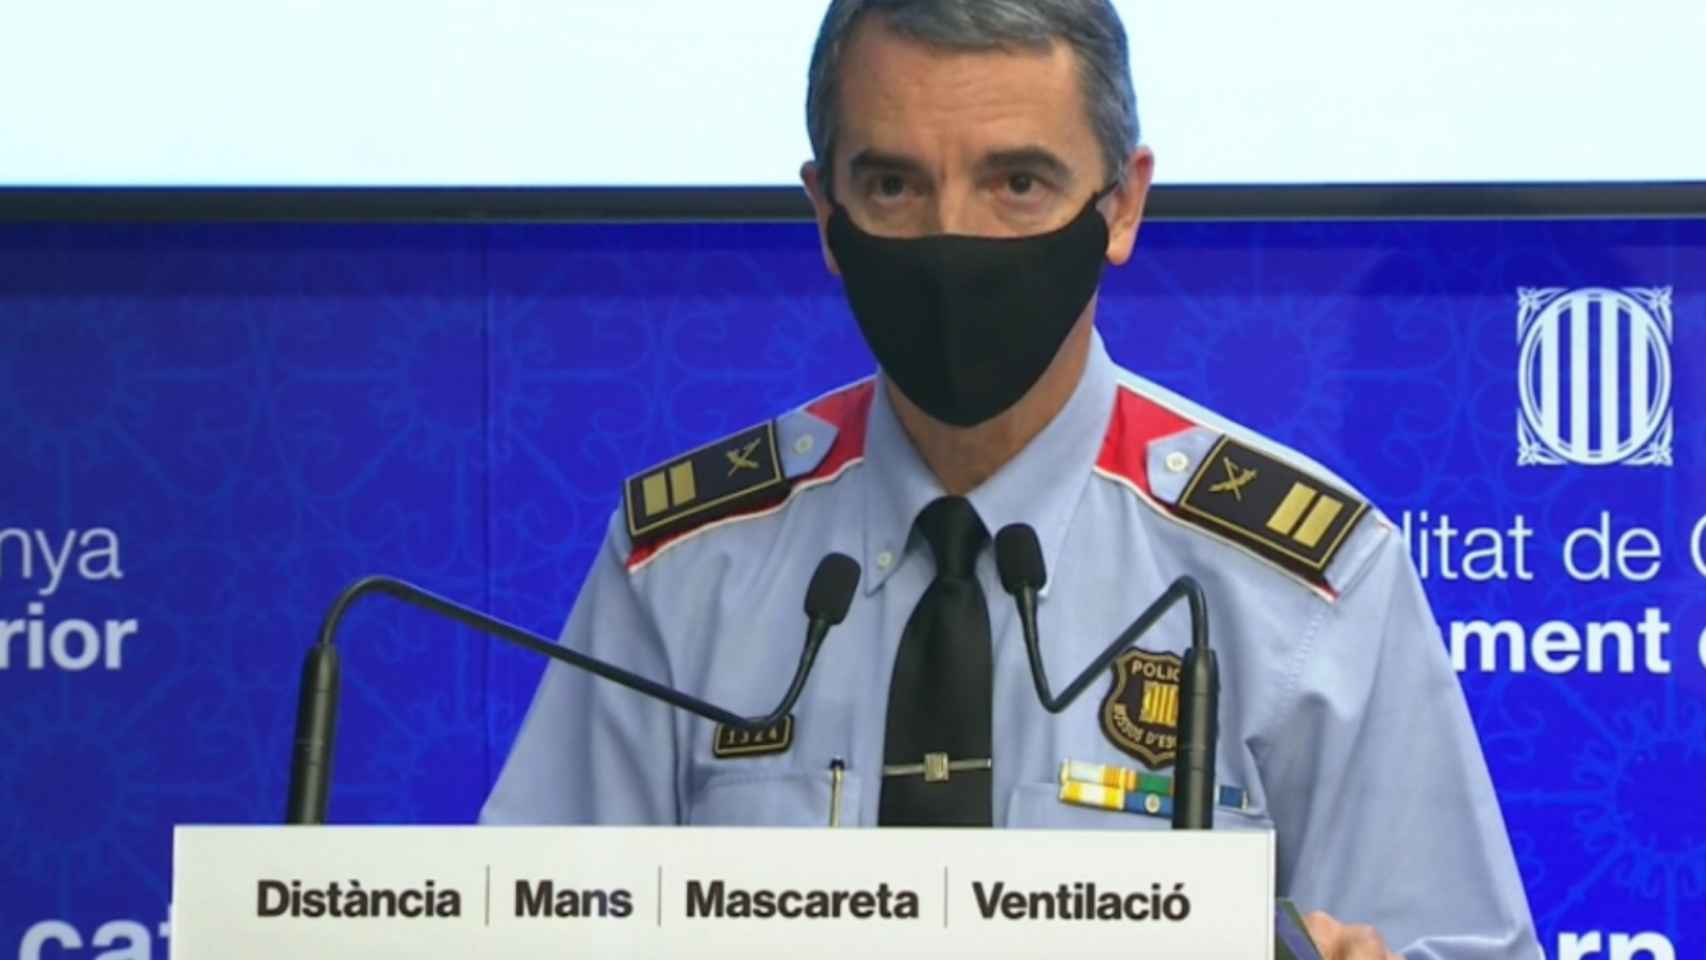 El comisario Joan Carles Molinero, portavoz de los Mossos d'Esquadra / MOSSOS